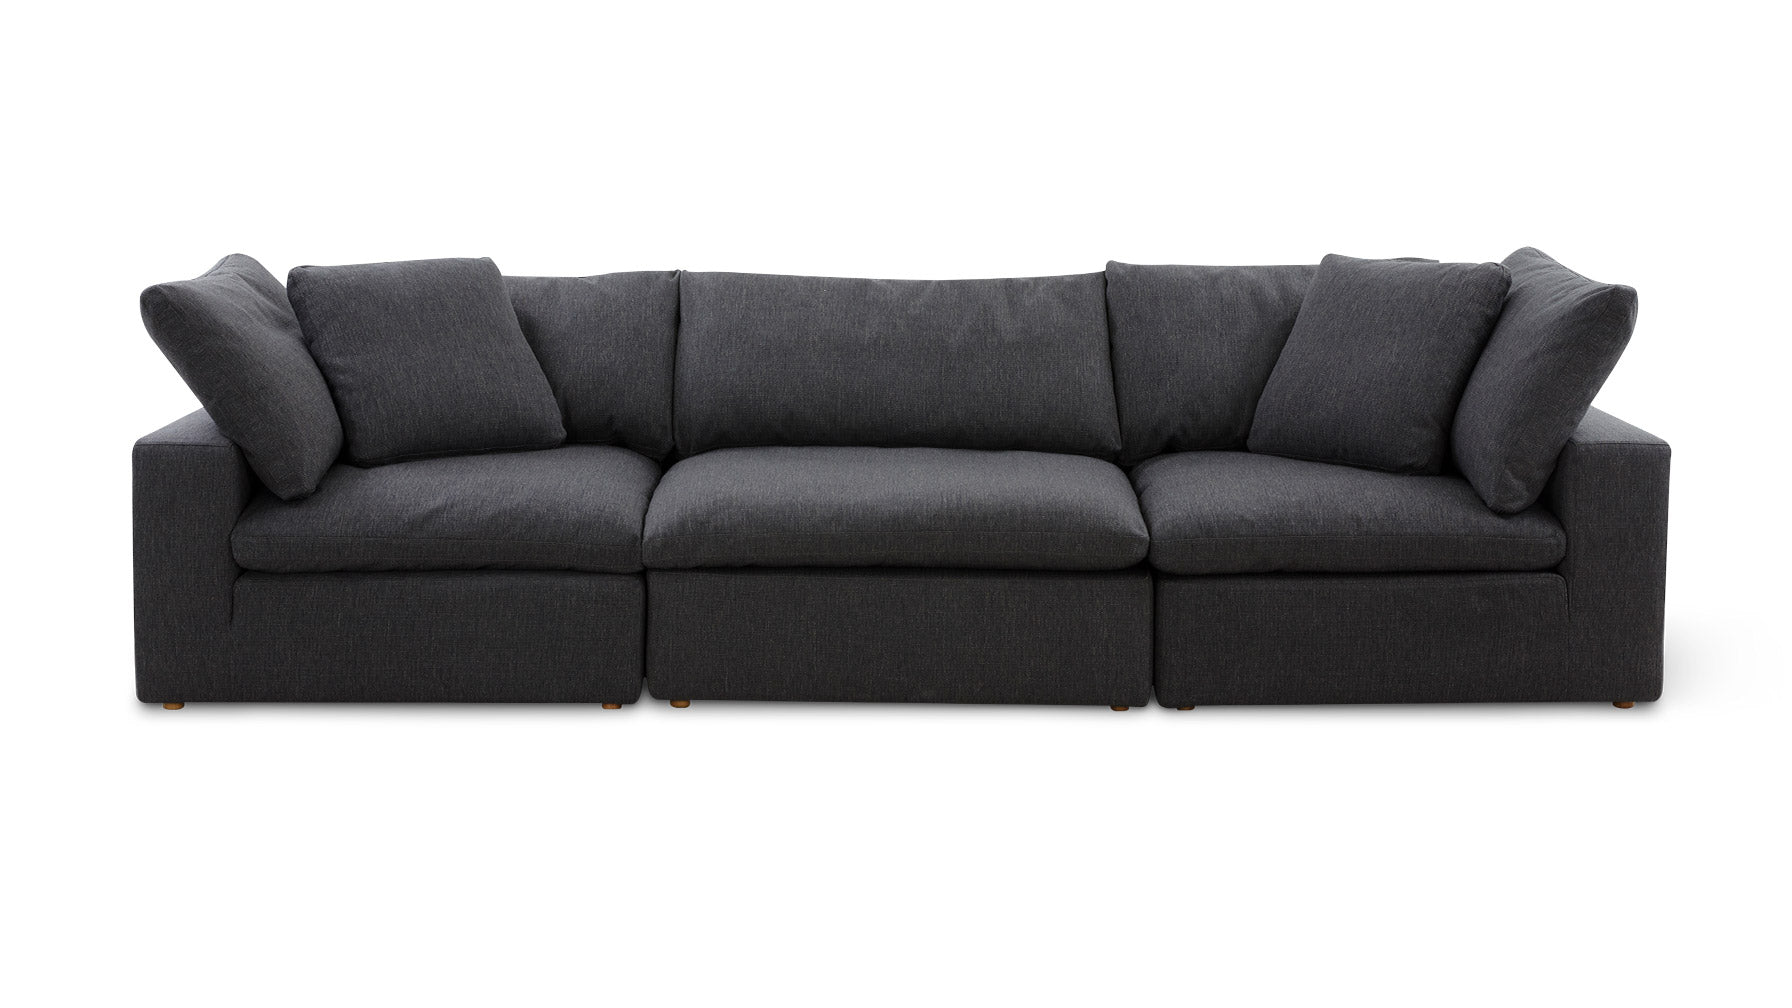 Movie Night™ 3-Piece Modular Sofa, Large, Dark Shadow - Image 1